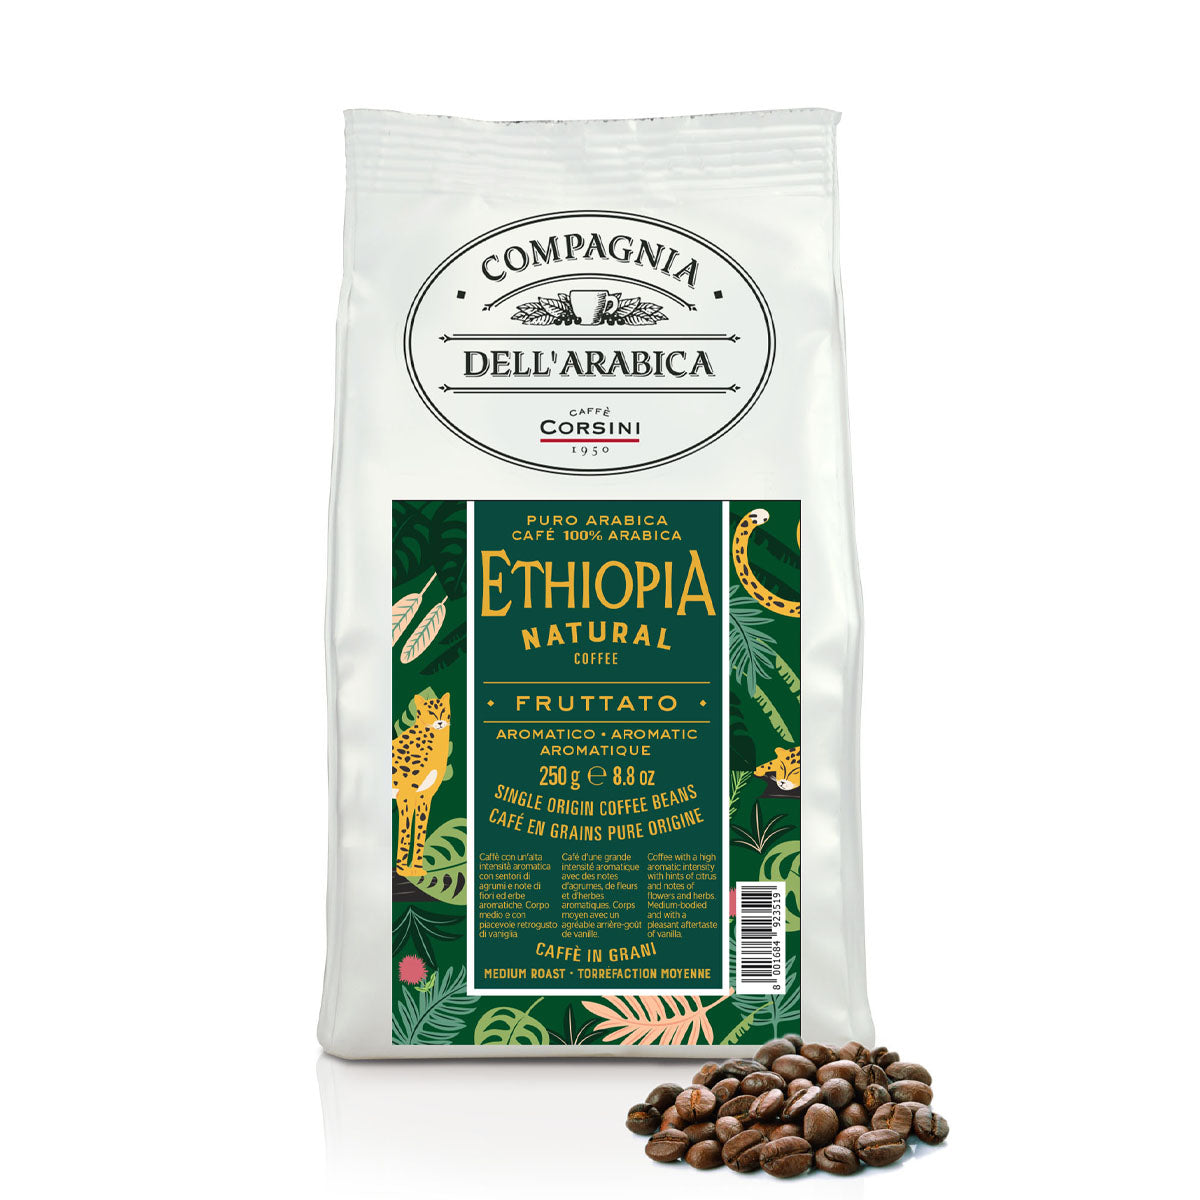 Caffè in grani | Ethiopia Natural Coffee | 100% Arabica | 250g | Cartone con 12 confezioni